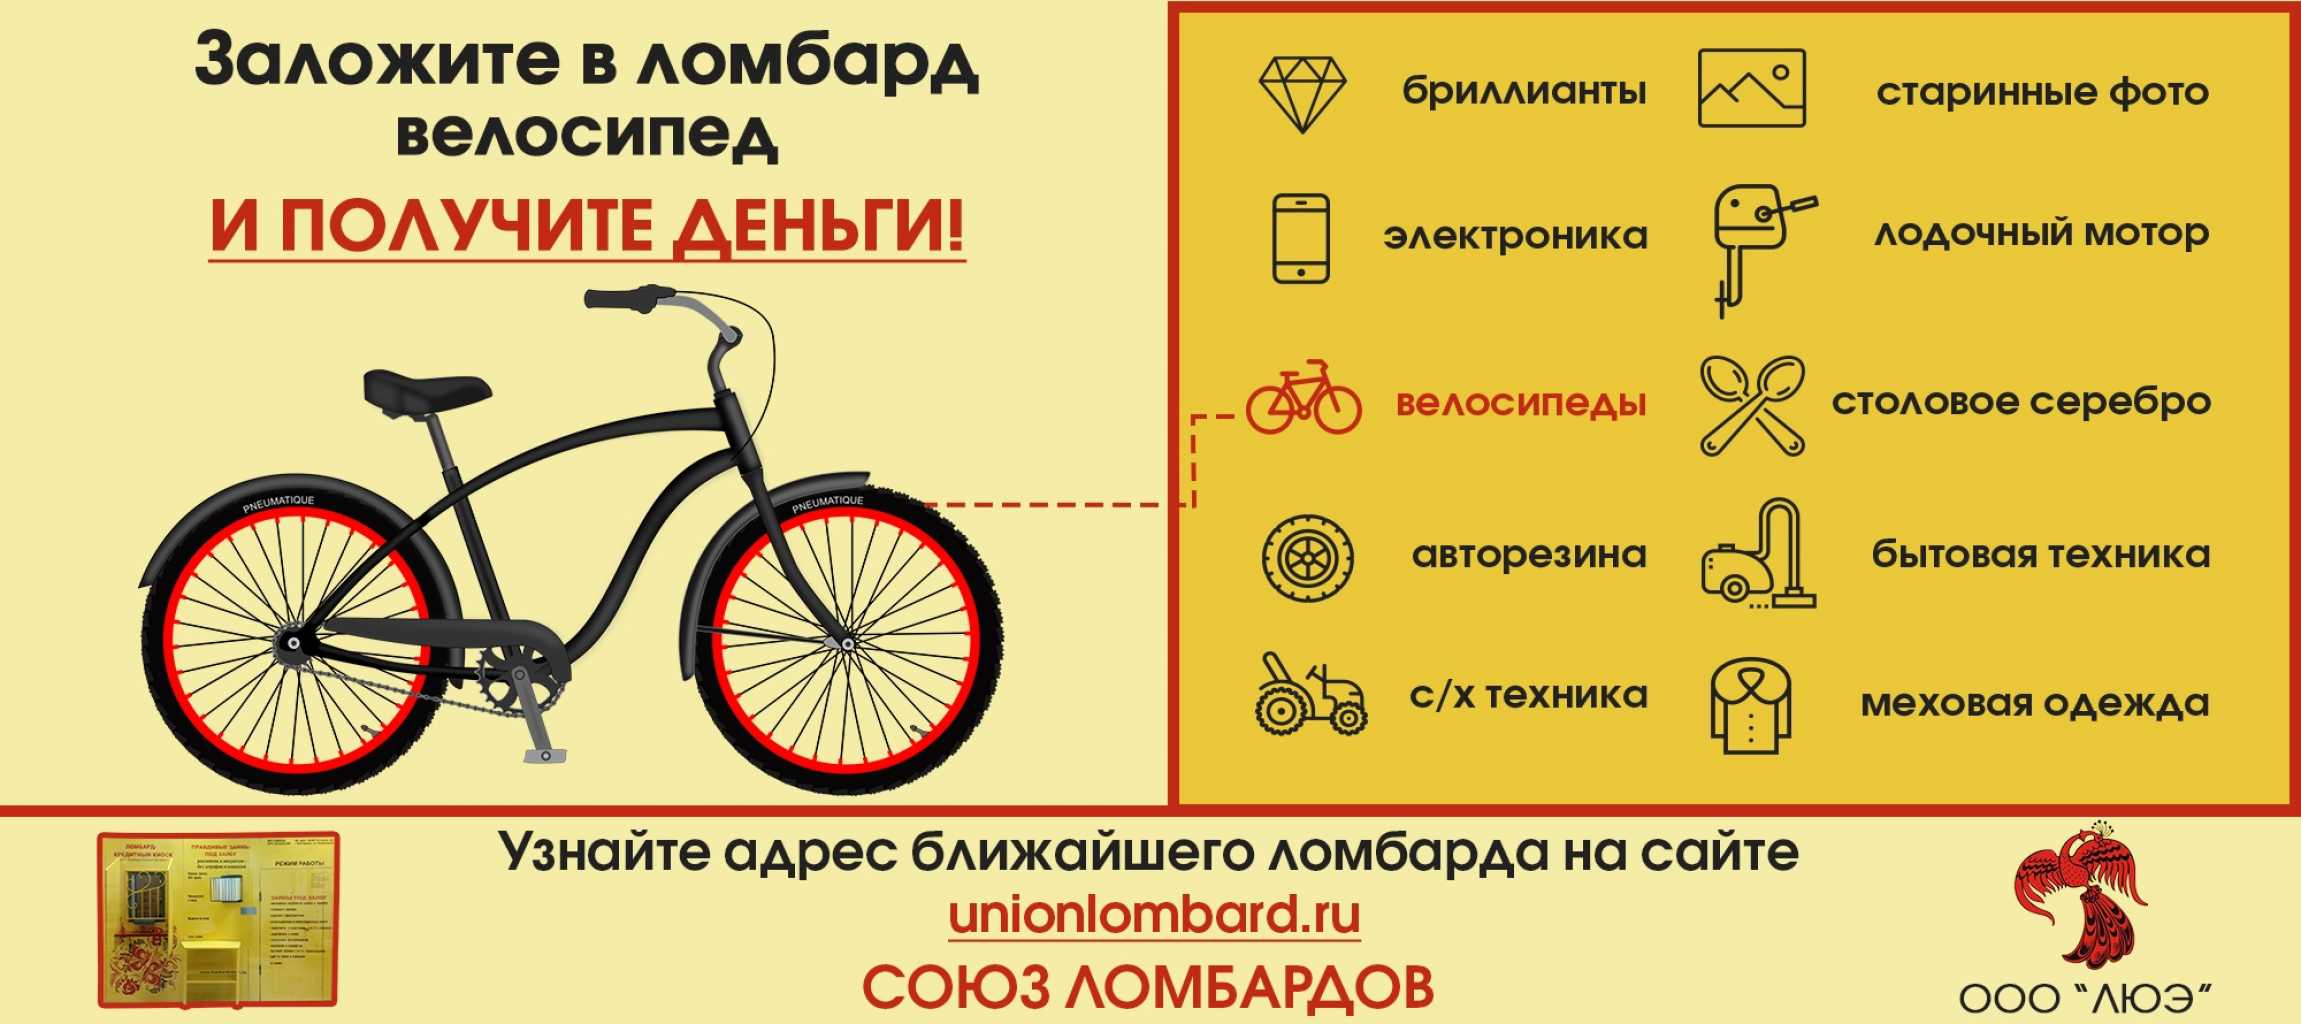 Можно ли сдать велосипед. Ломбард велосипед. Объявление о продаже велосипеда. Можно ли сдать велосипед в ломбард. Залог велосипеда.